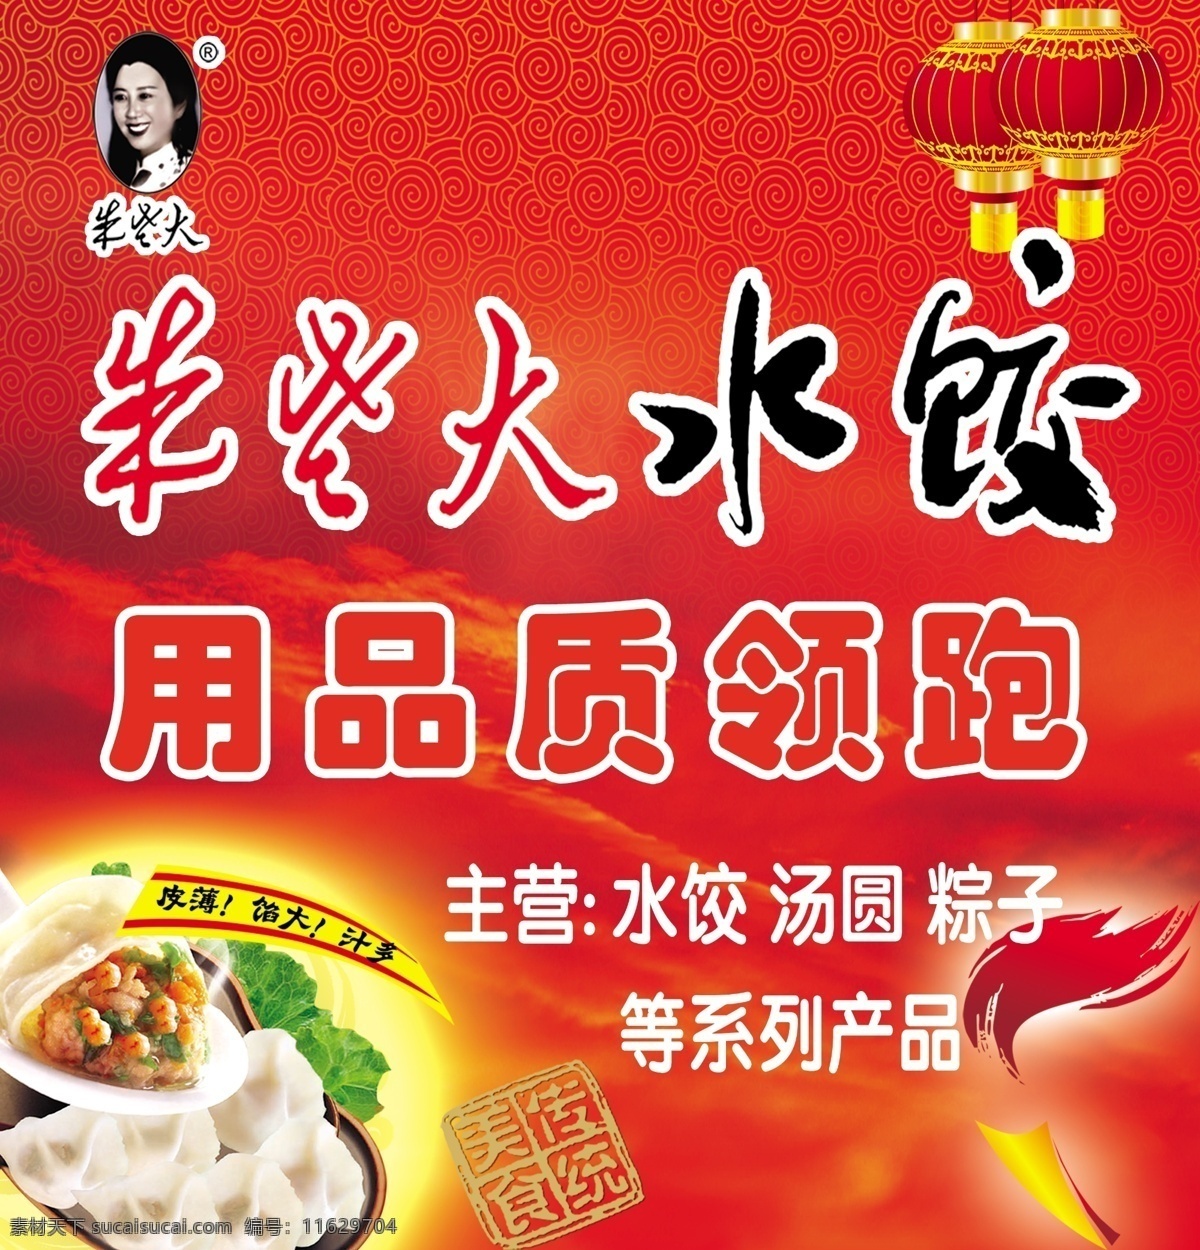 朱 老大 水饺 朱老大水饺 红色背景 灯笼 火炬 传统美食印章 手工水饺